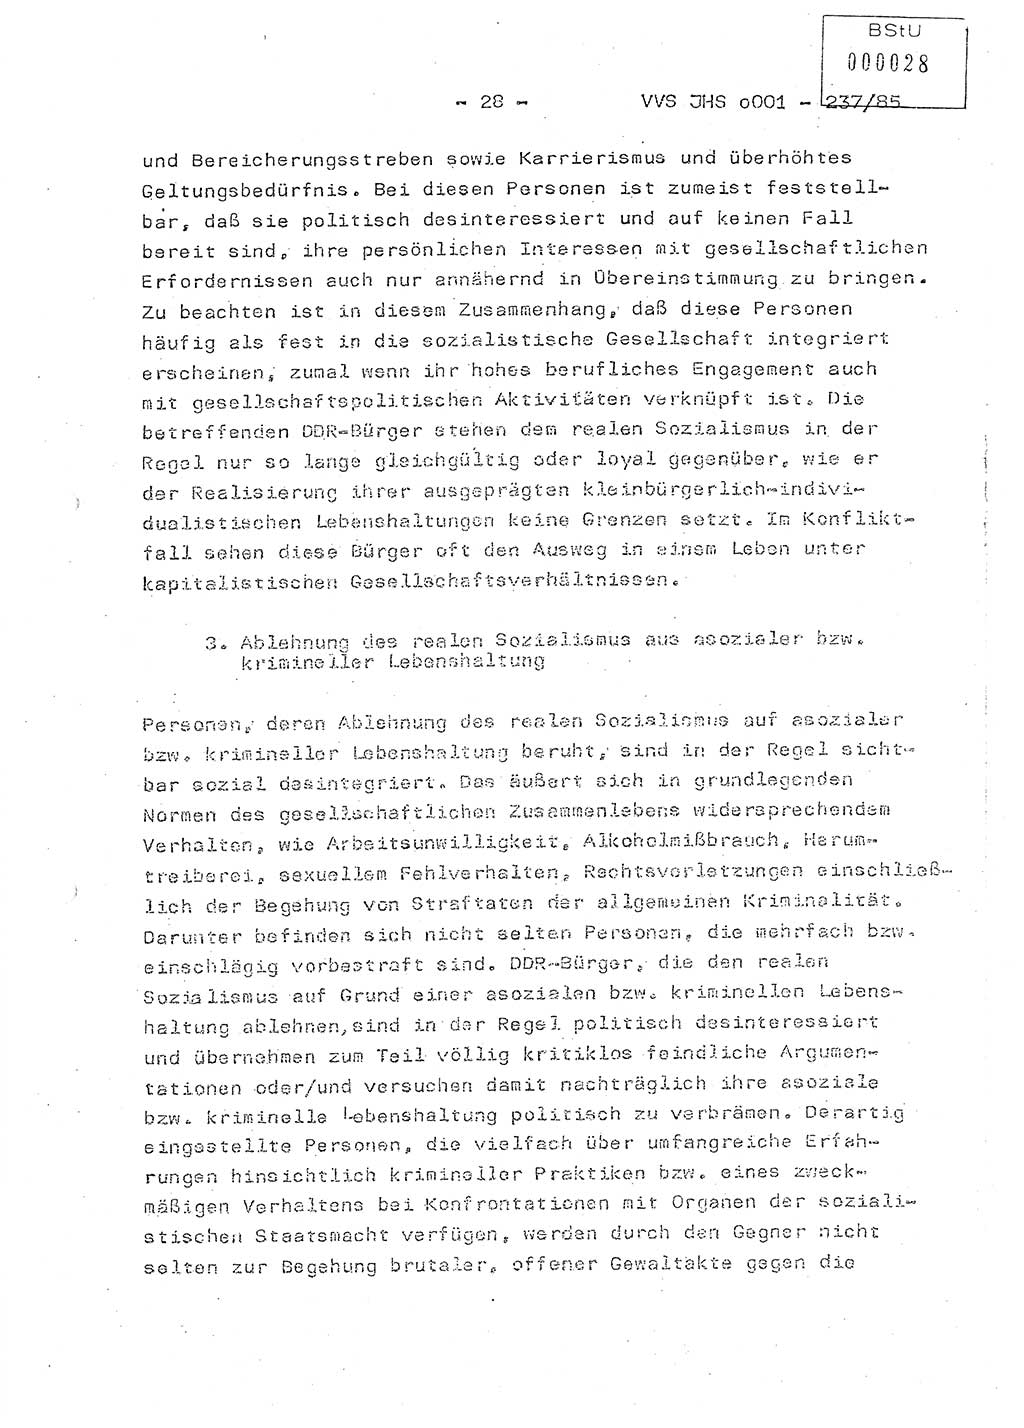 Dissertation Oberstleutnant Peter Jakulski (JHS), Oberstleutnat Christian Rudolph (HA Ⅸ), Major Horst Böttger (ZMD), Major Wolfgang Grüneberg (JHS), Major Albert Meutsch (JHS), Ministerium für Staatssicherheit (MfS) [Deutsche Demokratische Republik (DDR)], Juristische Hochschule (JHS), Vertrauliche Verschlußsache (VVS) o001-237/85, Potsdam 1985, Seite 28 (Diss. MfS DDR JHS VVS o001-237/85 1985, S. 28)